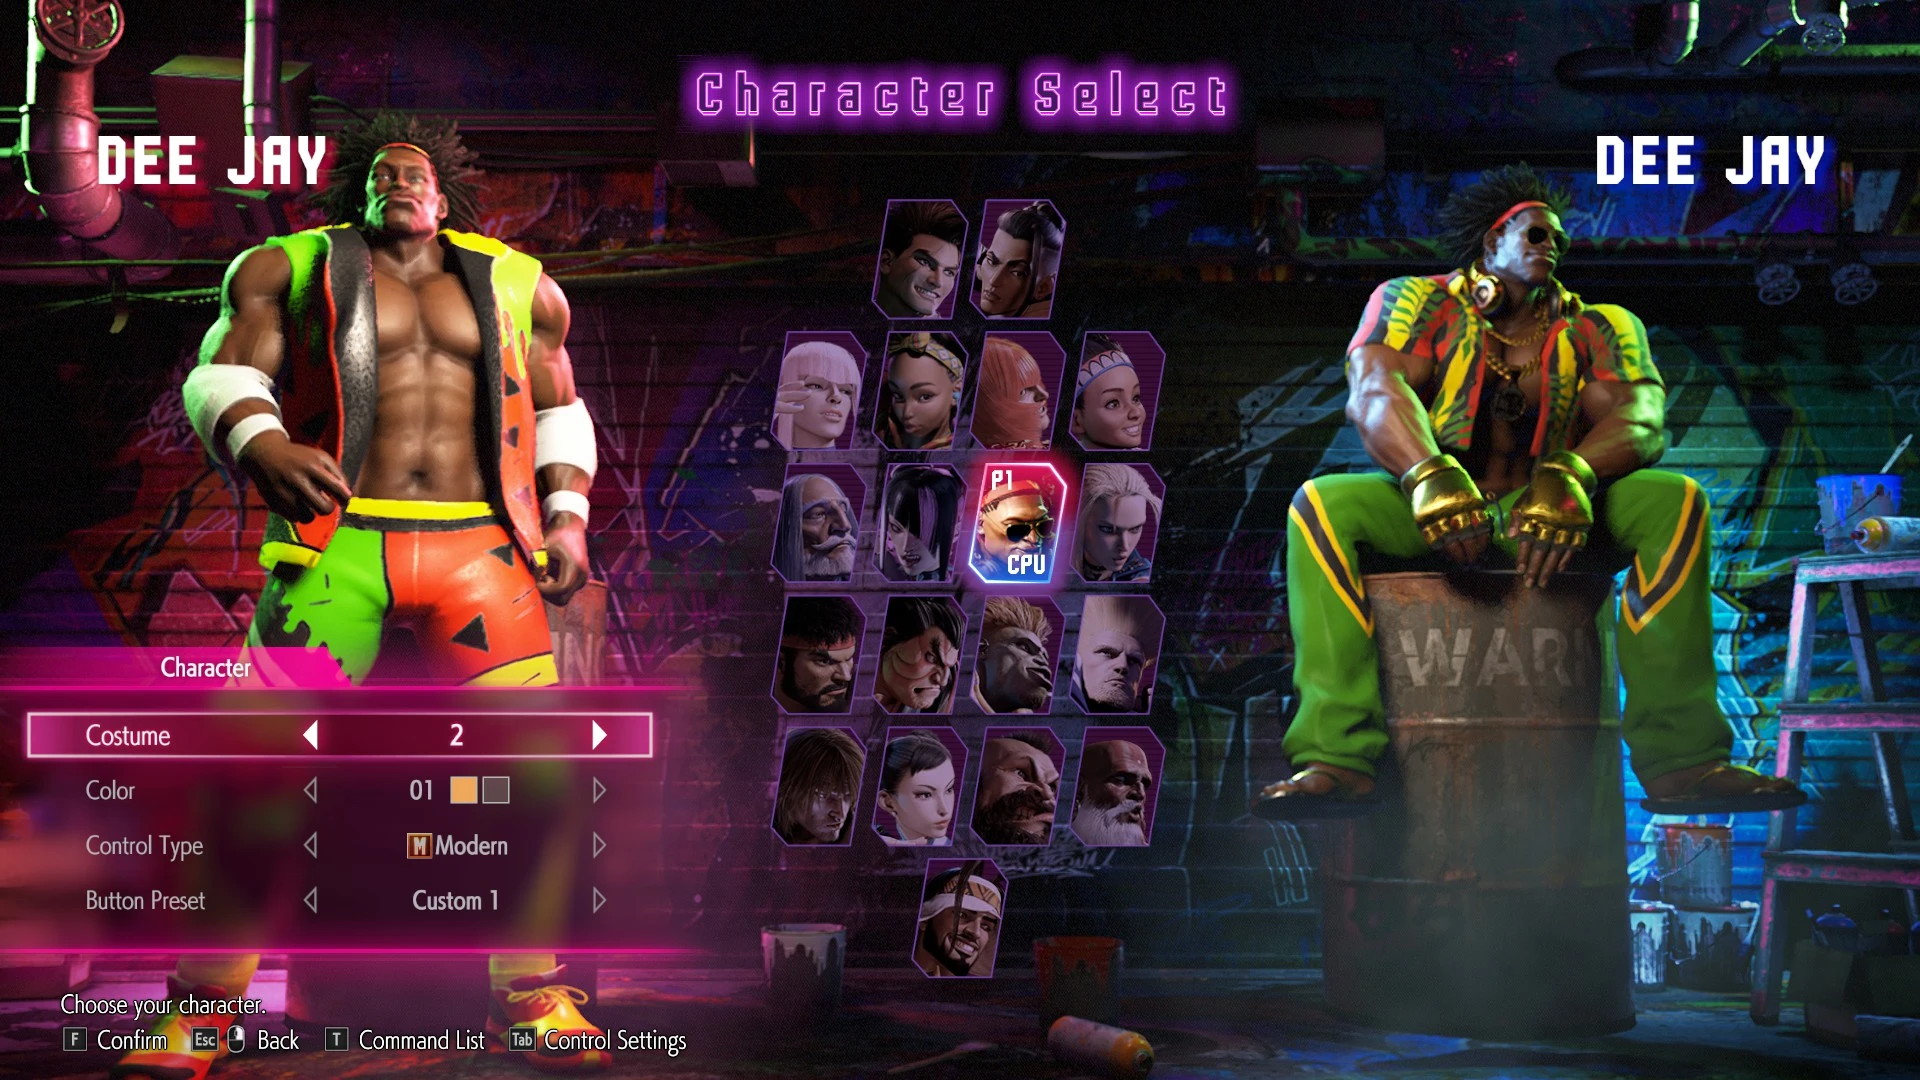 Monkeygigabuster on X: Street Fighter 6 mod Luke The Wrestler